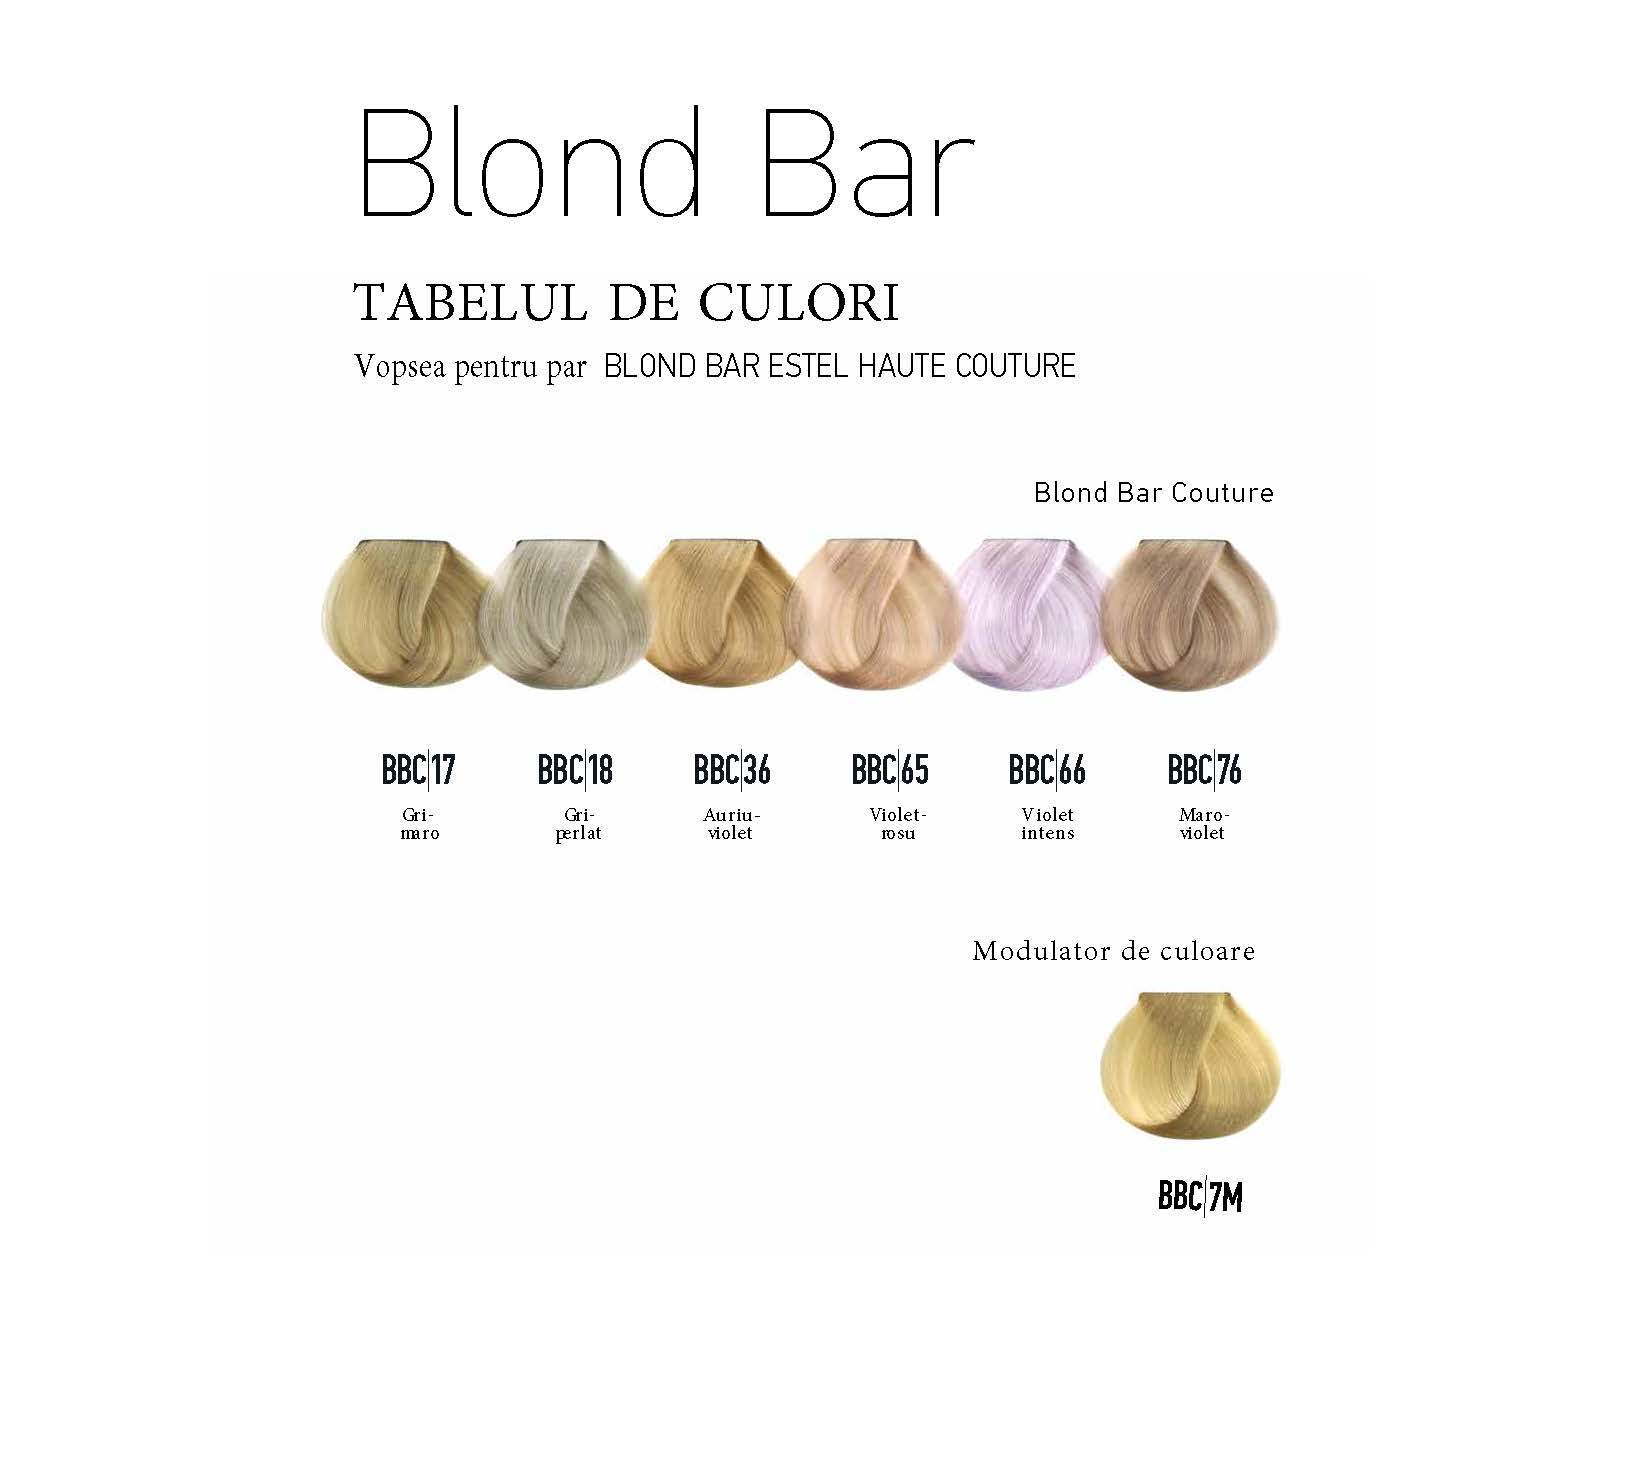 Vopsea permanenta pentru par Blond Bar Couture BBC/7M Modulator de culoare 60 ml